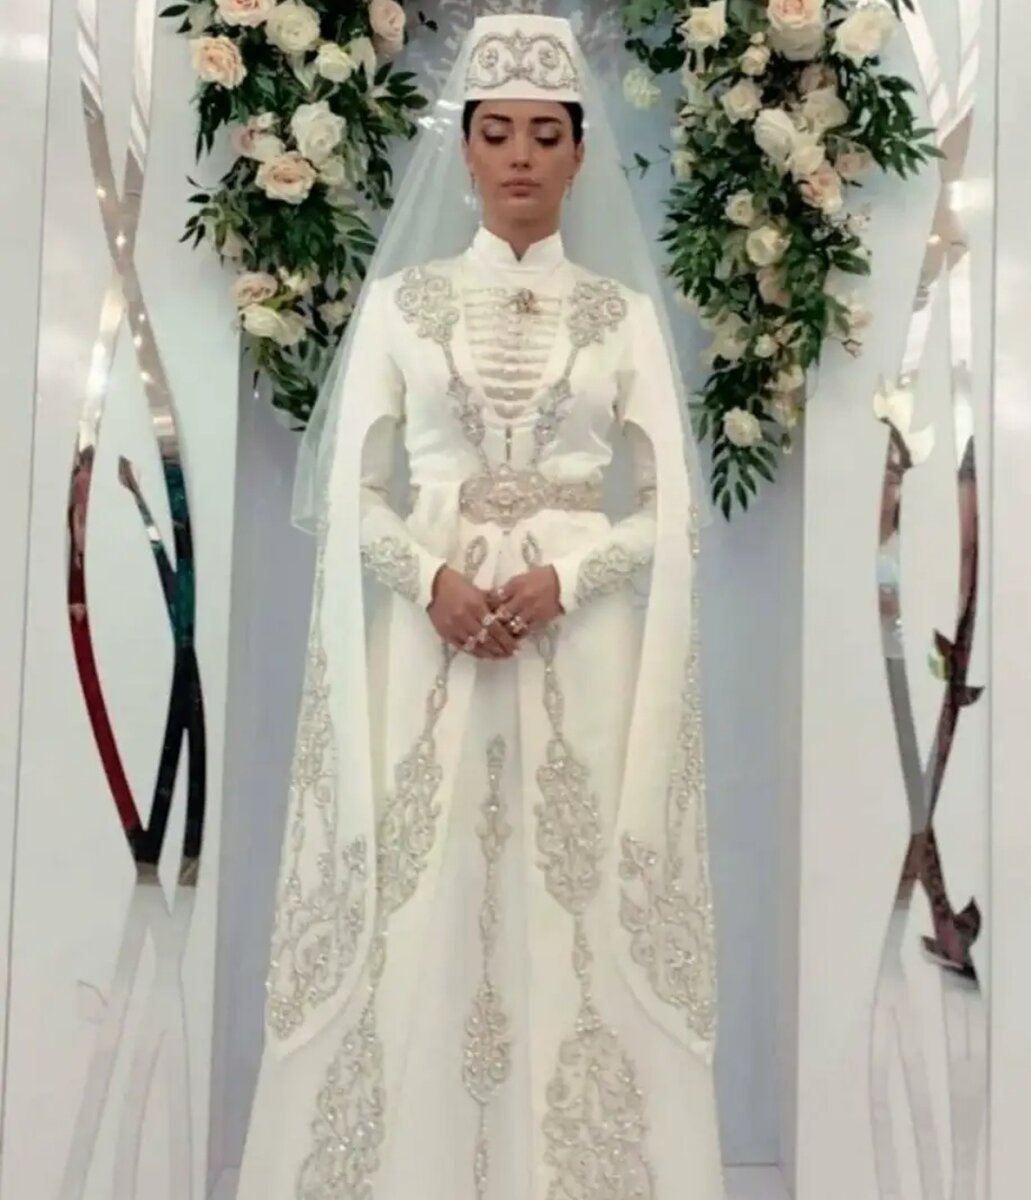 Осетинский свадебный наряд